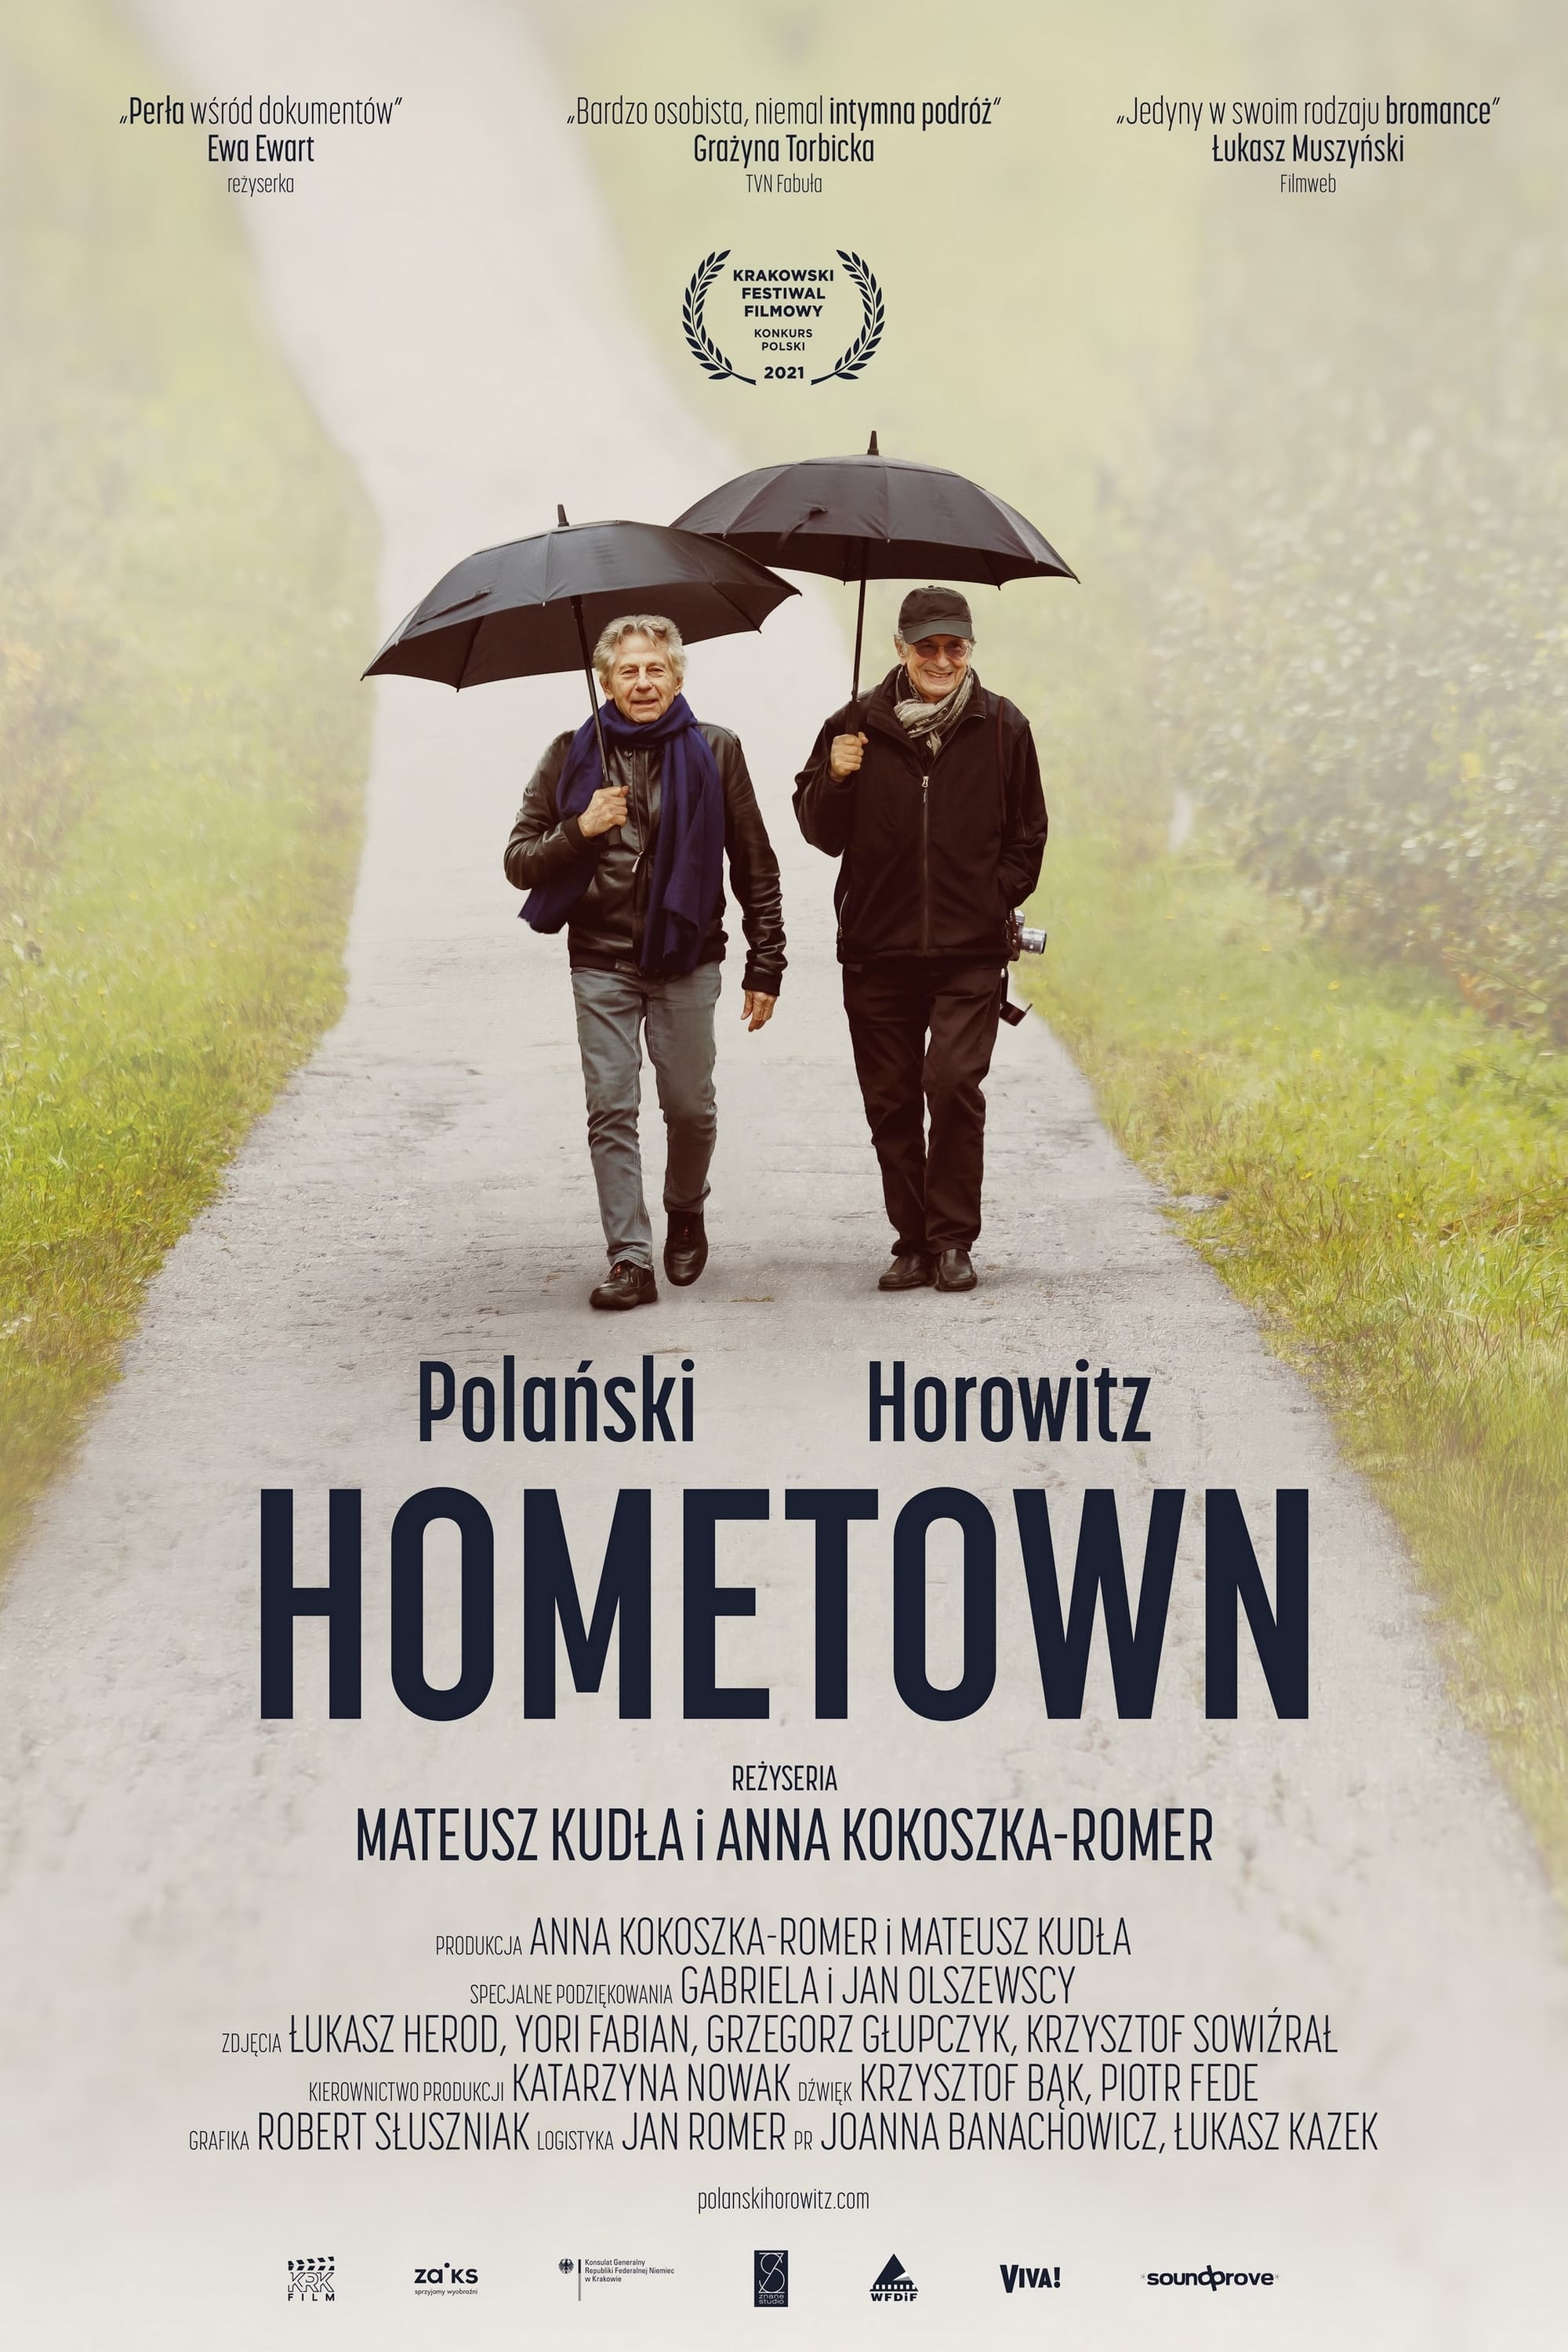 Polanski, Horowitz. The Wizards From the Ghetto